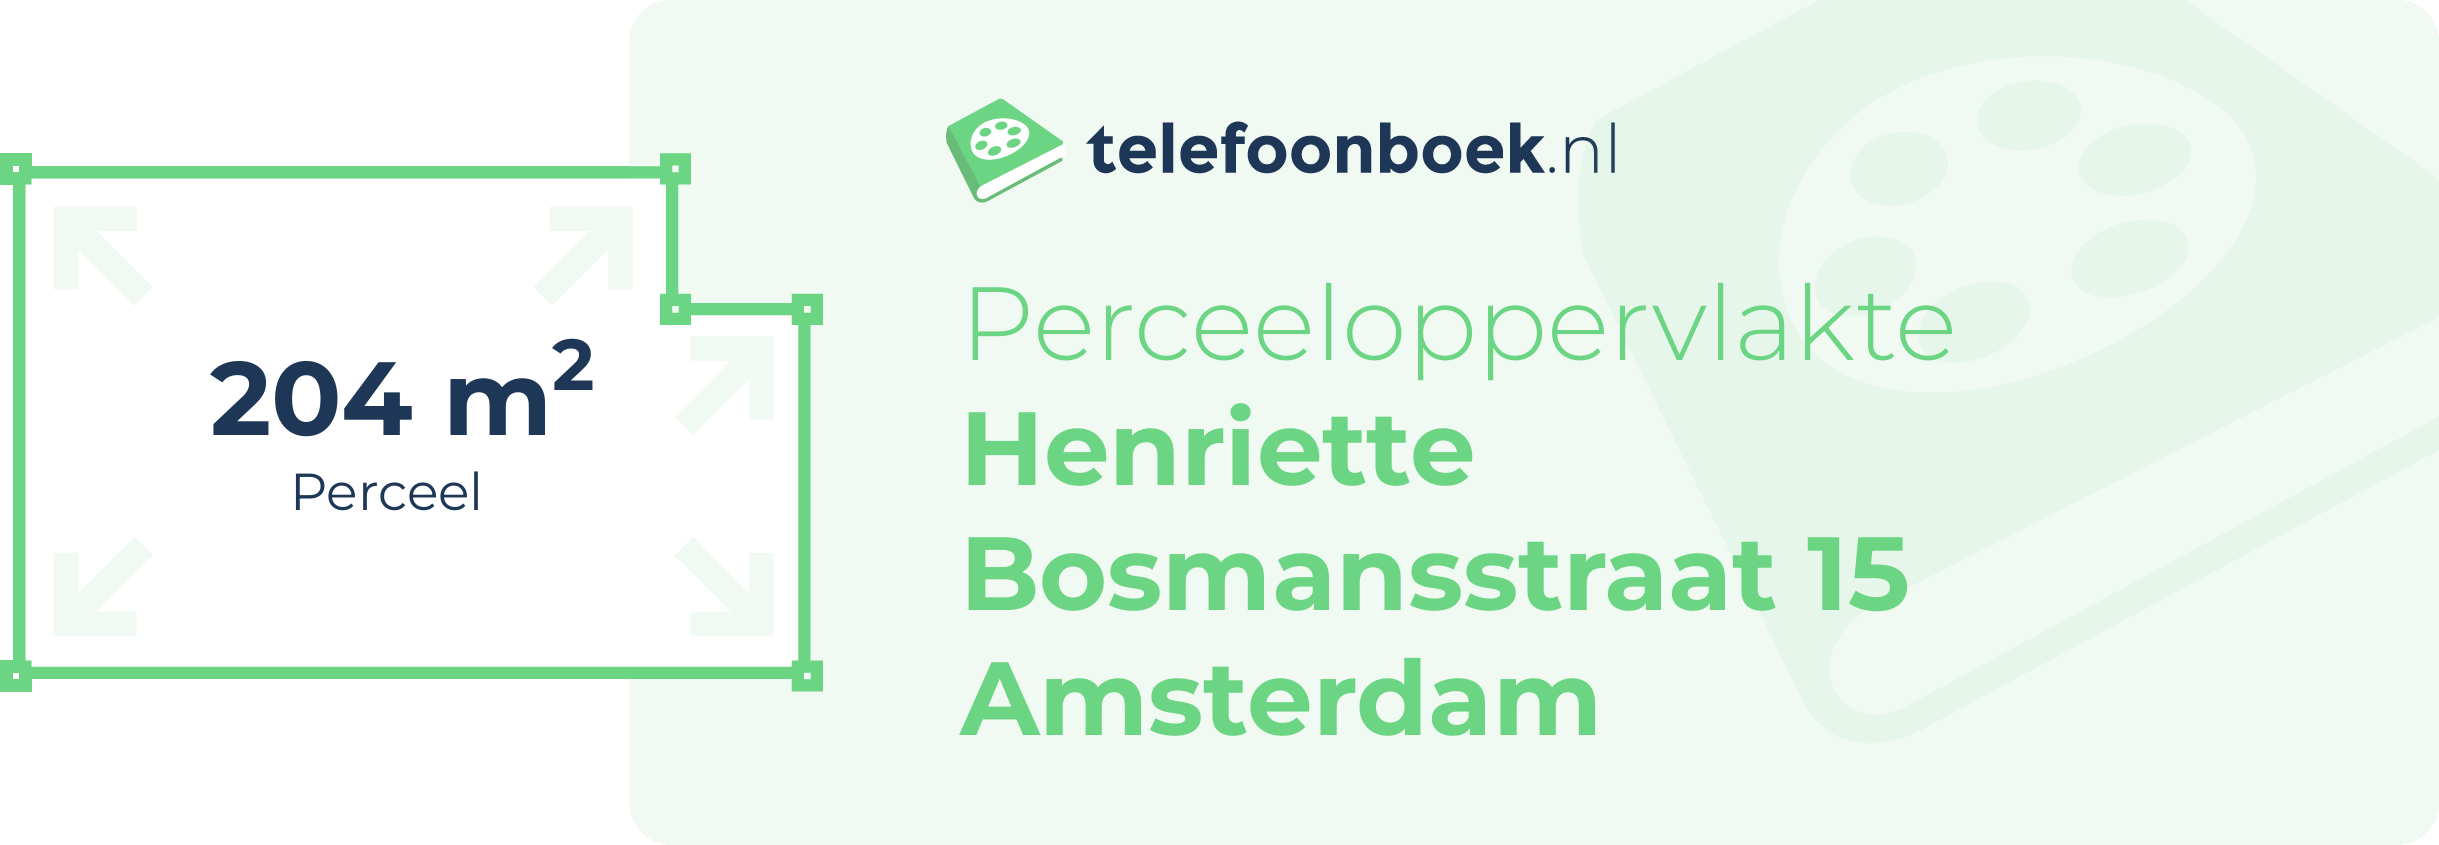 Perceeloppervlakte Henriette Bosmansstraat 15 Amsterdam